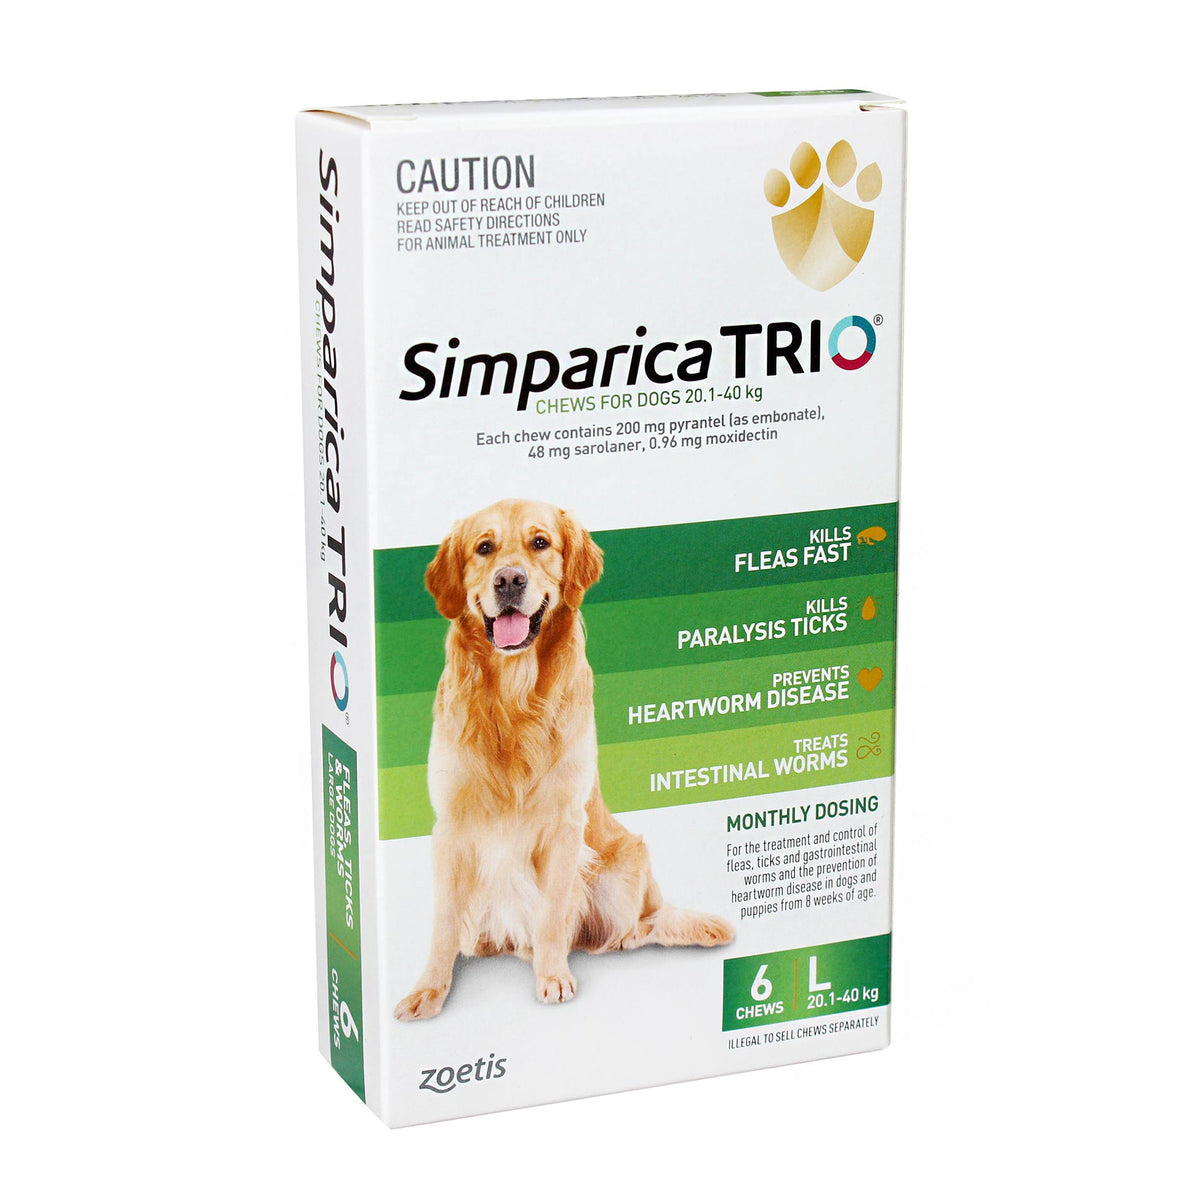 Simparica TRIO for Large Dogs 20.1-40kg